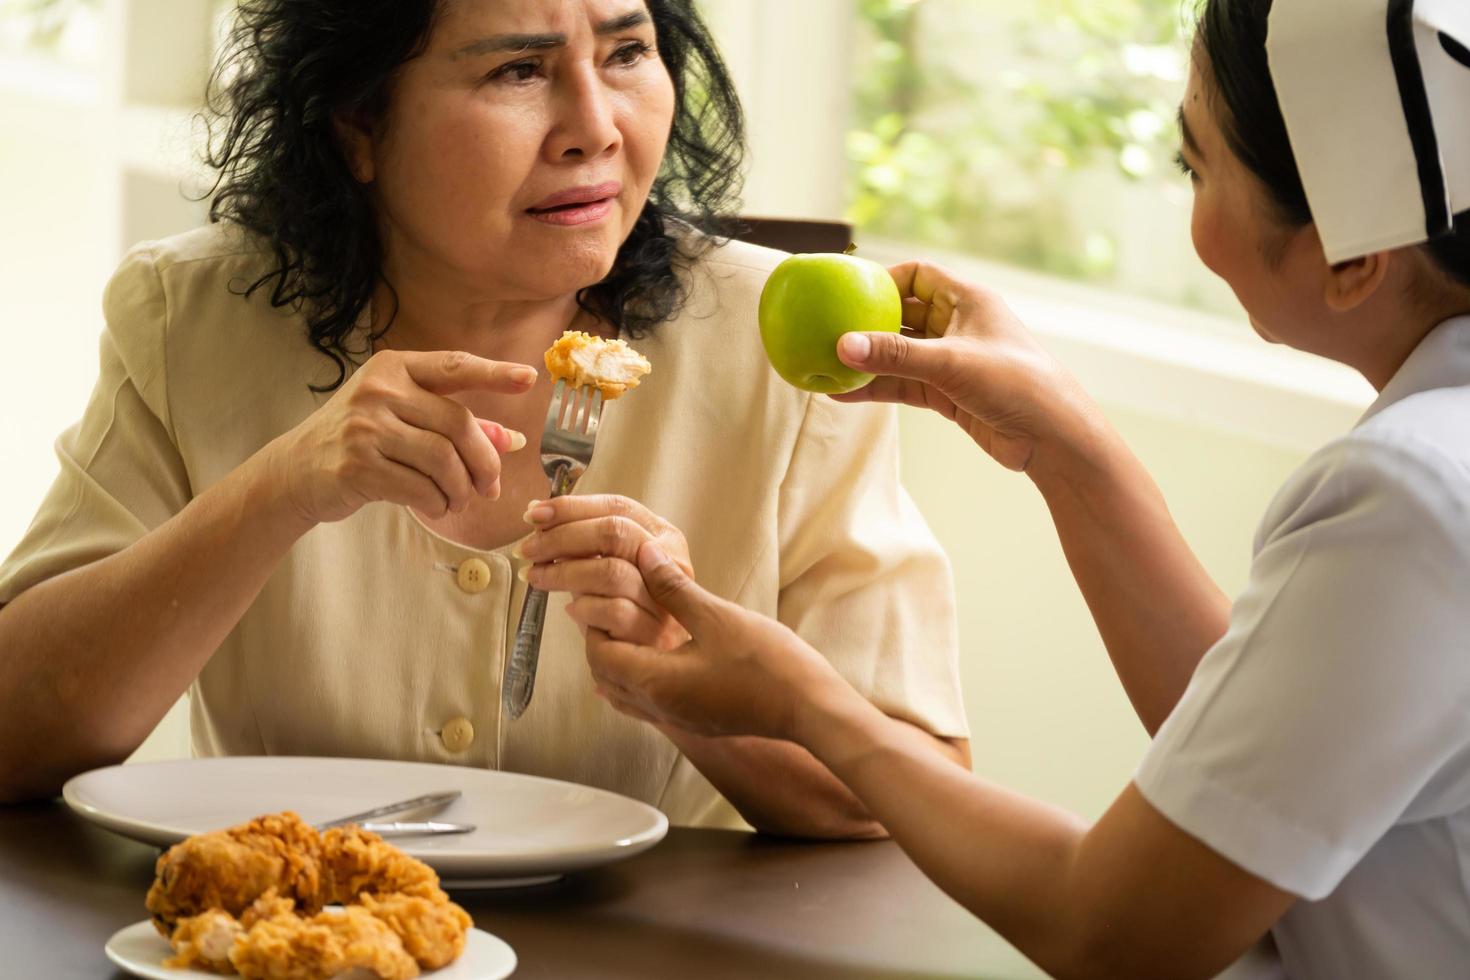 enfermeira sugerindo que paciente adulta do sexo feminino comesse maçã em vez de frango frito. foto